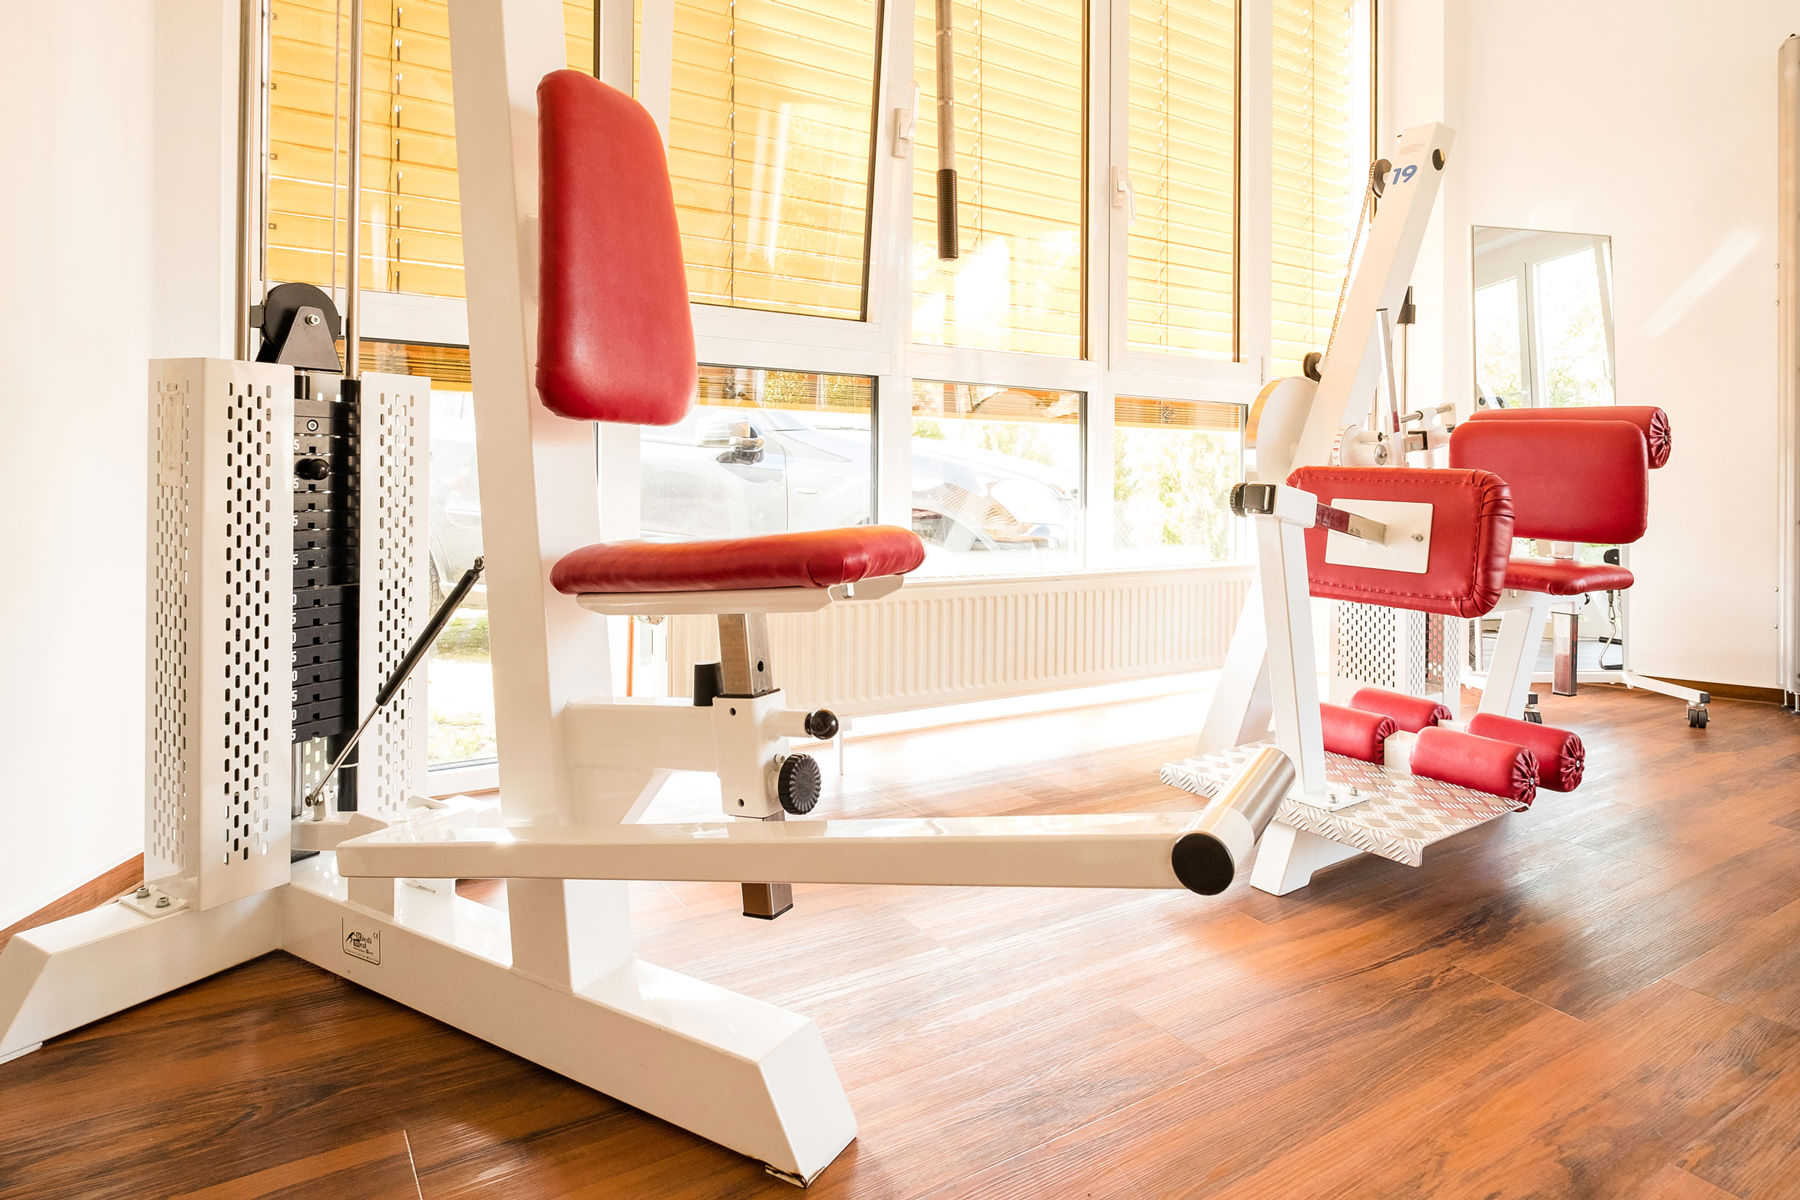 Fitnessbereich der Physiotherapie-Praxis Ortkraß in Steinhagen, vielseitige Ausstattung mit Geräten